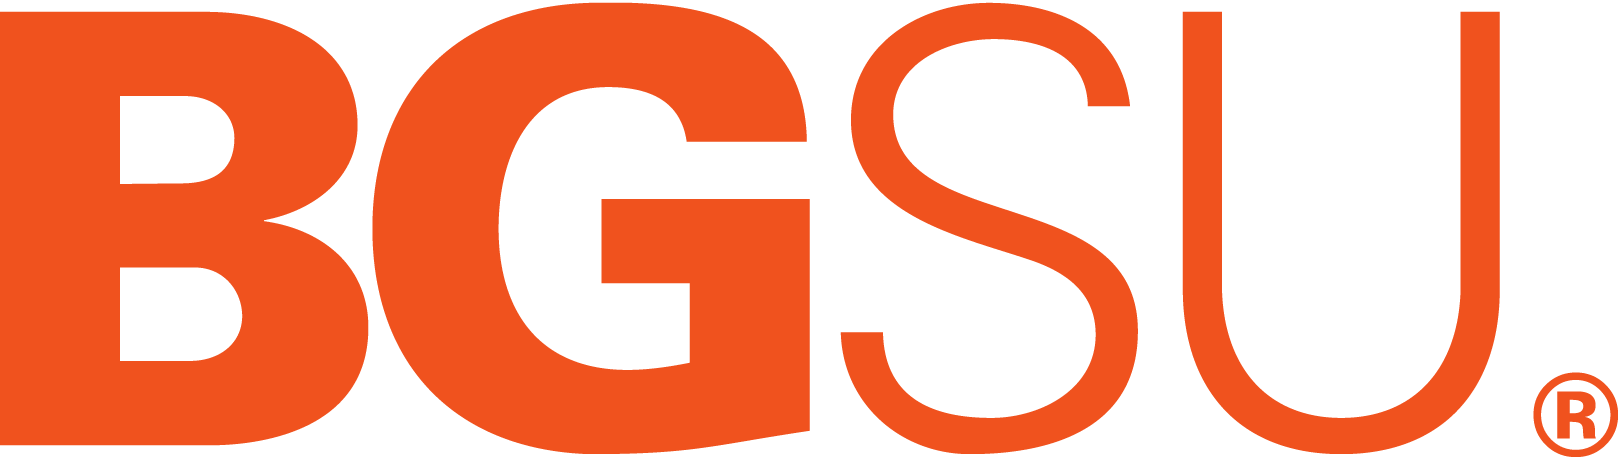 bgsu-orange